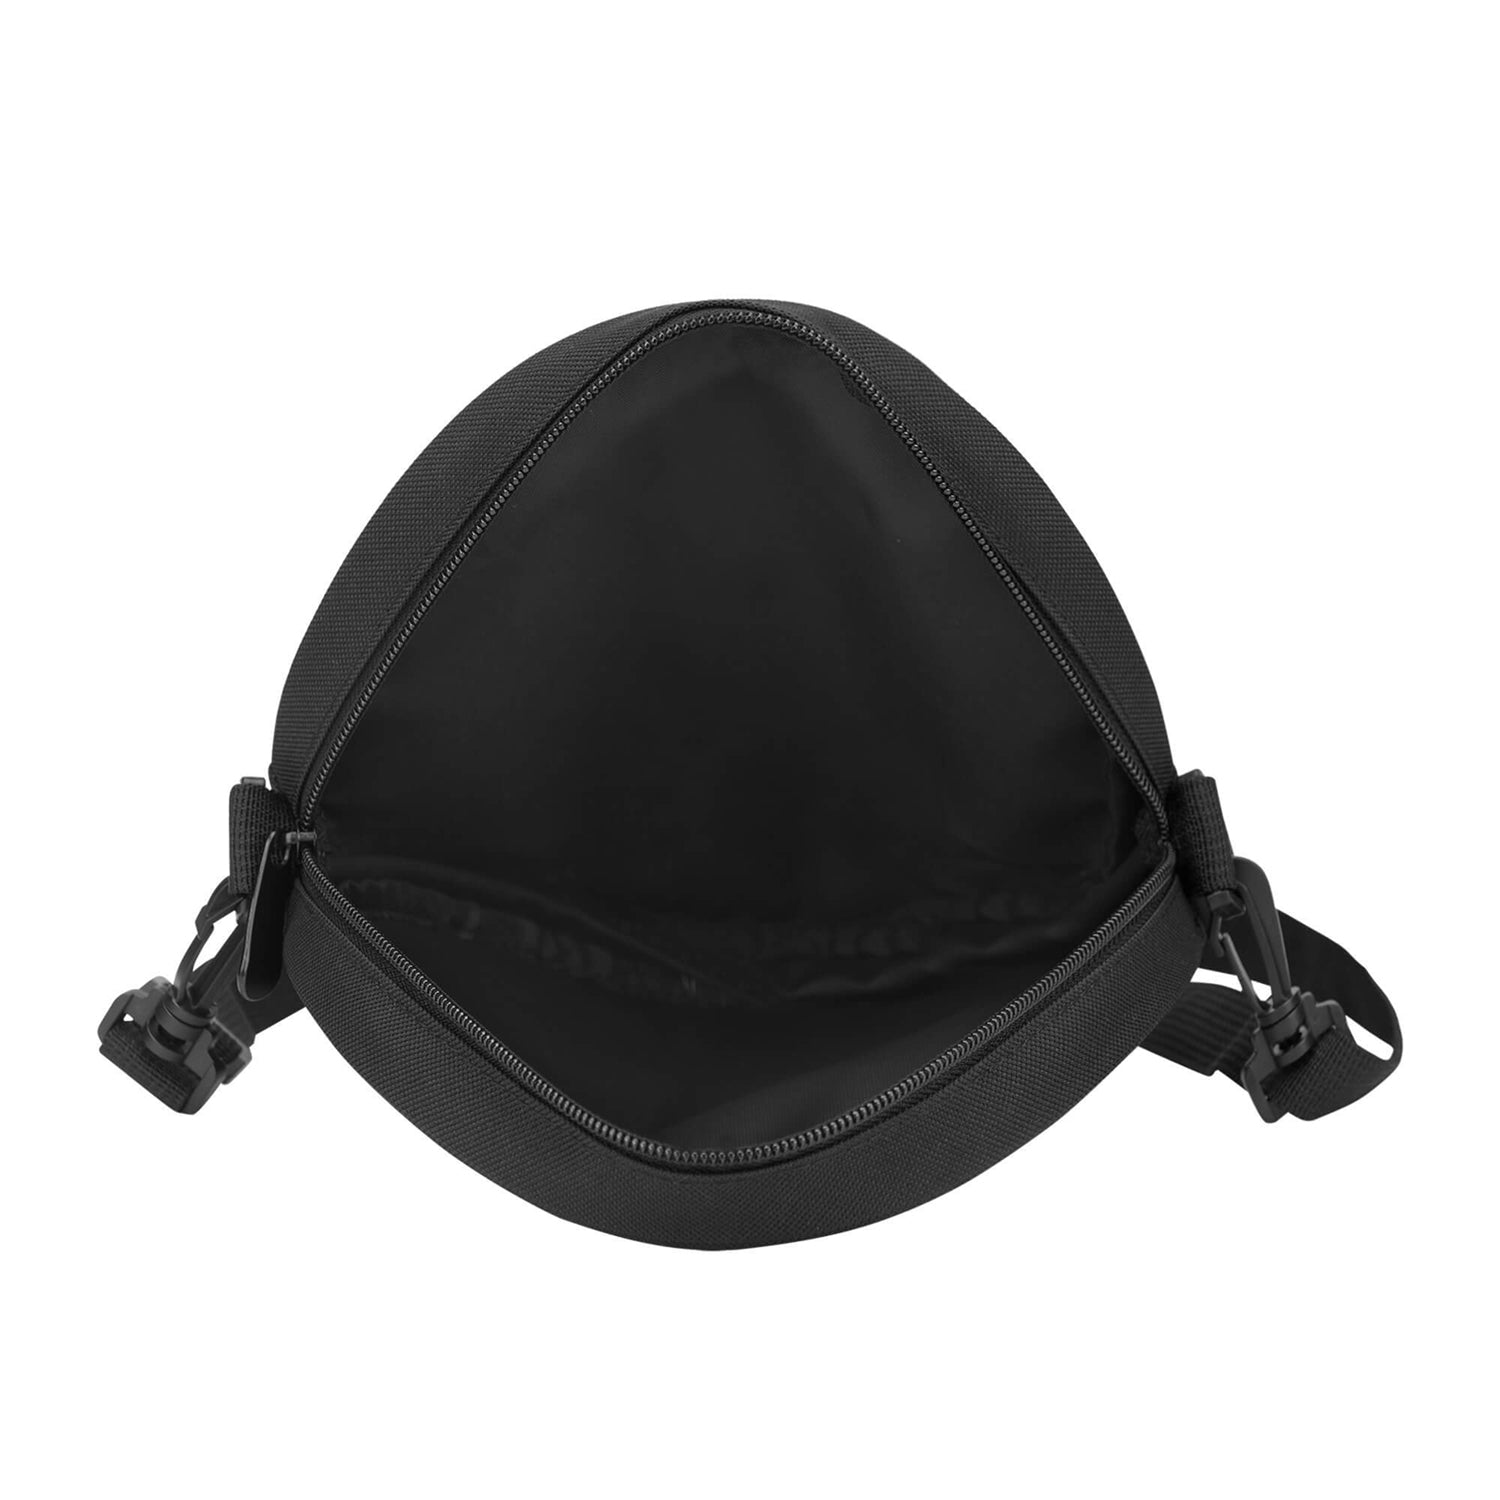 colquhoun-tartan-round-satchel-bags